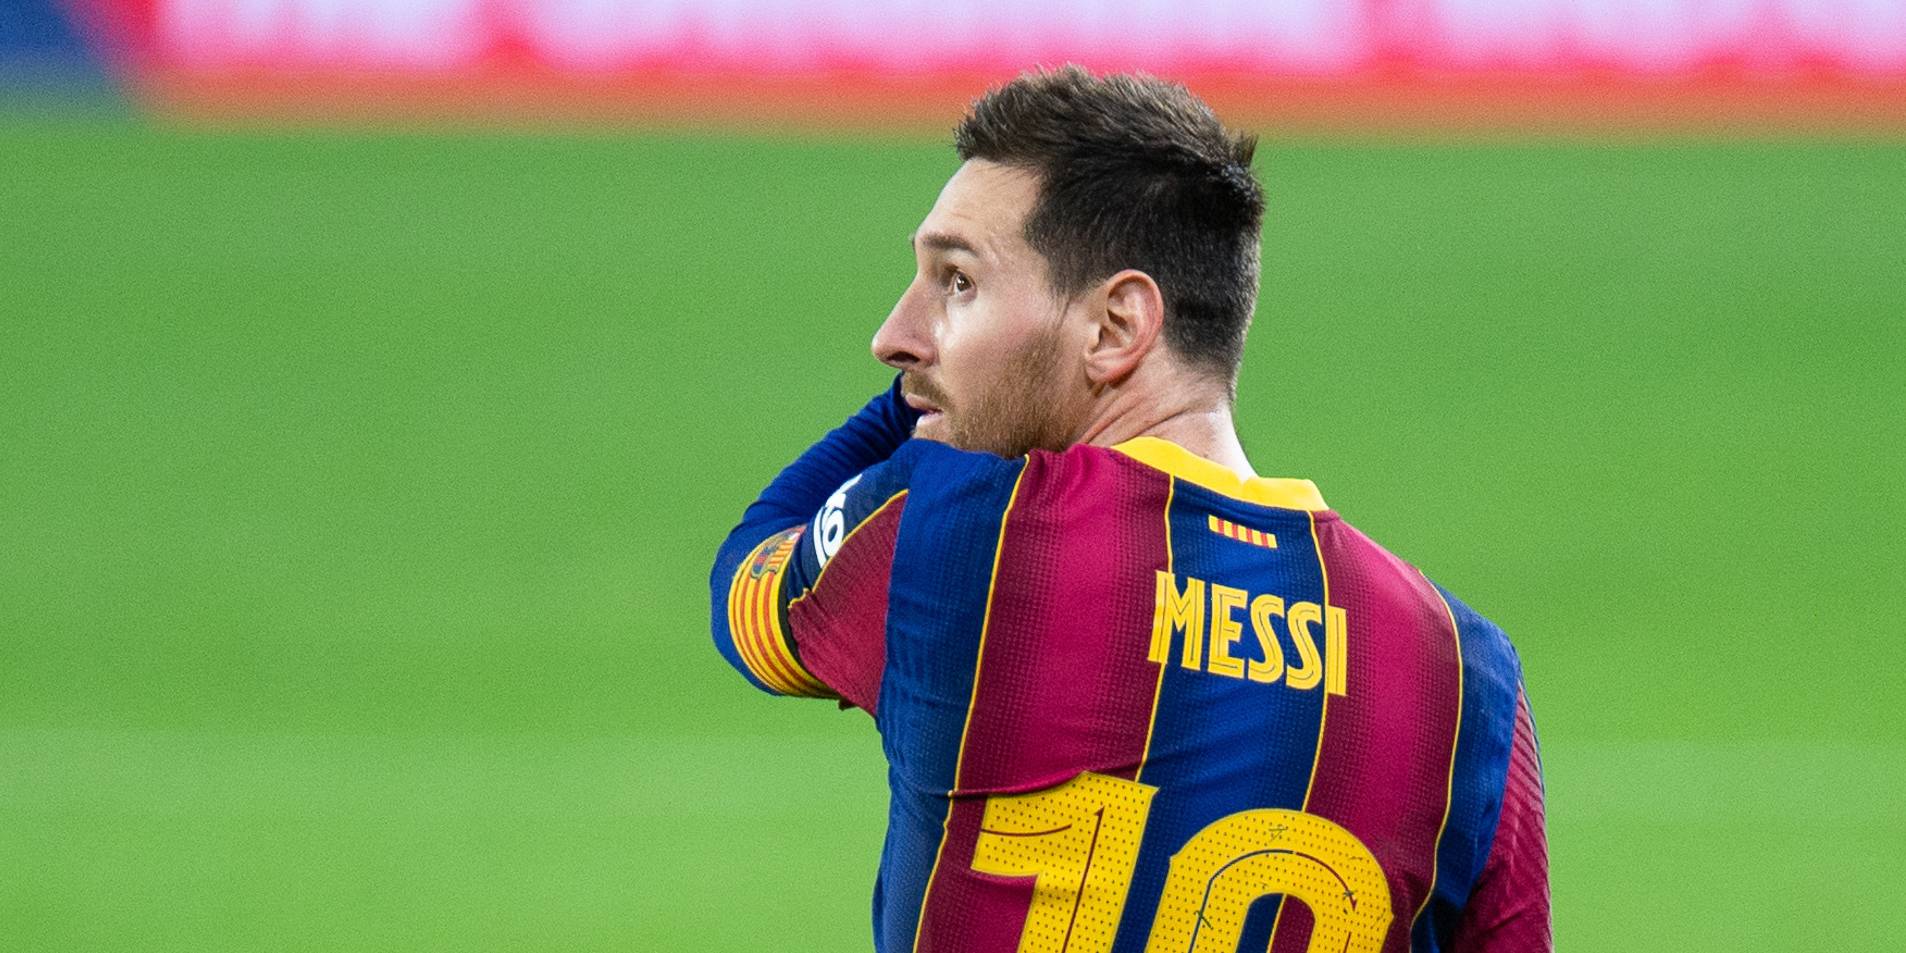 Equipos de la Liga de Arabia Saudita preparan oferta para convencer a Messi